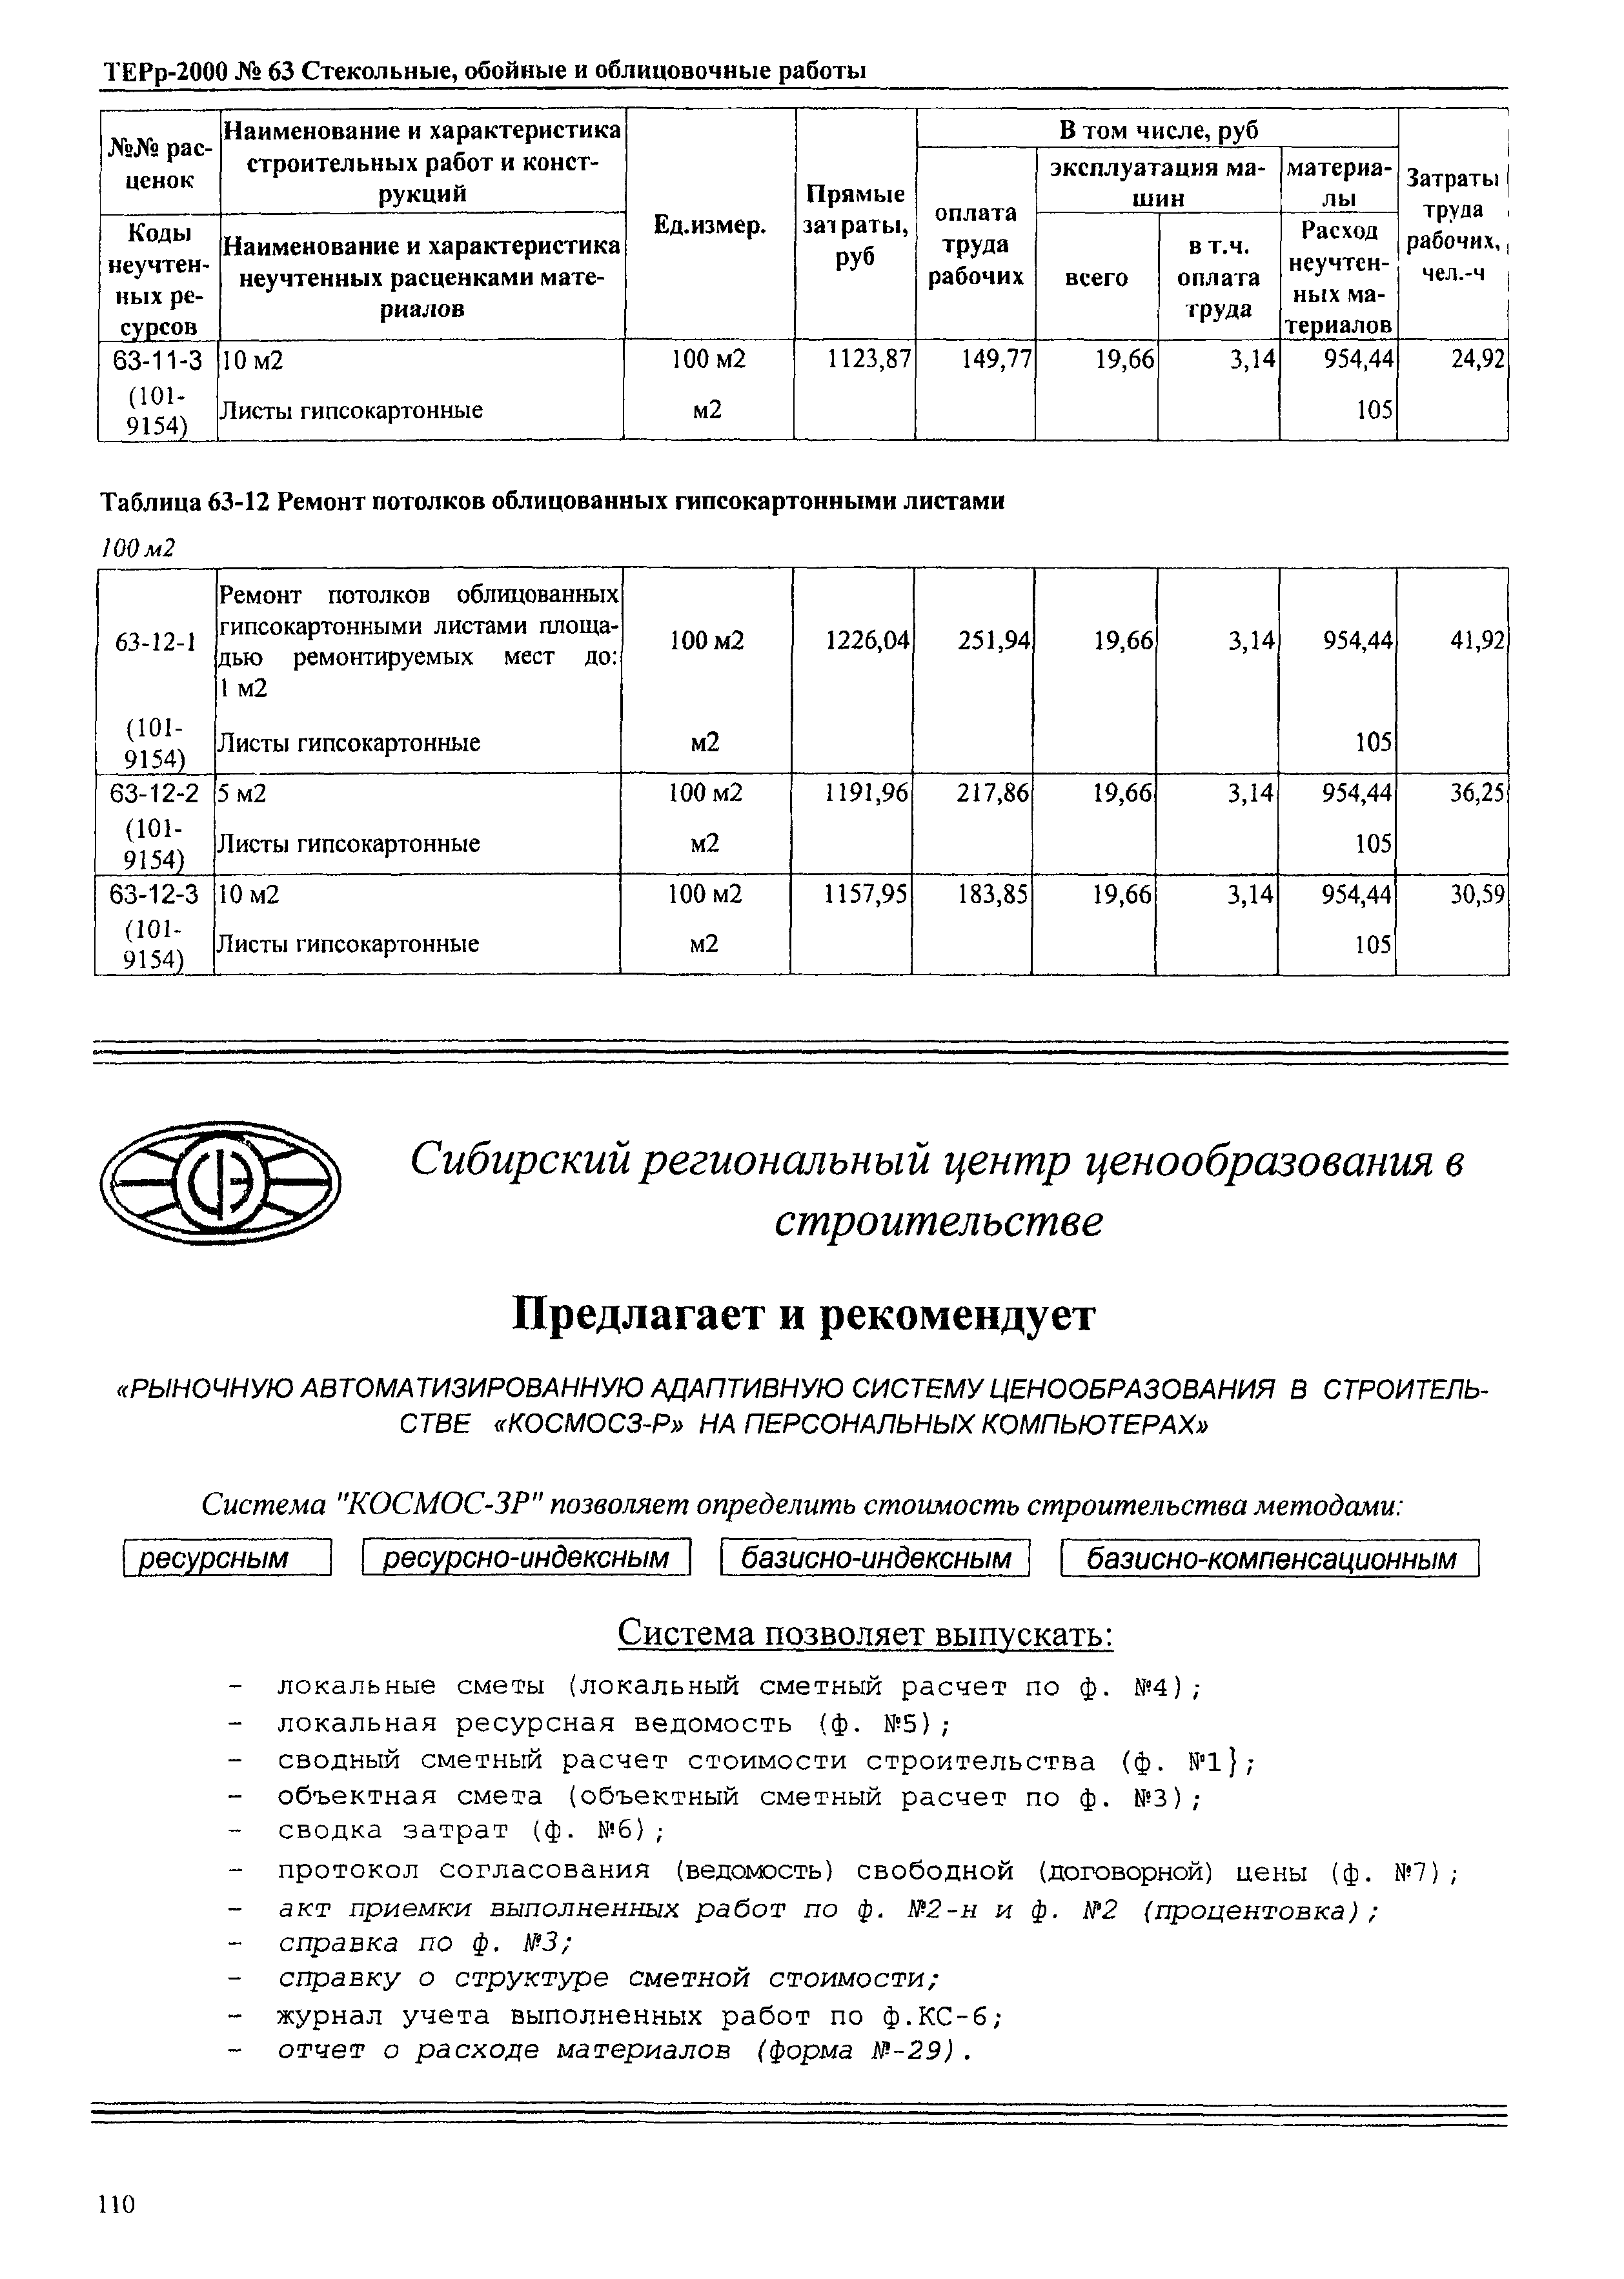 ТЕРр Омская область 2000-63